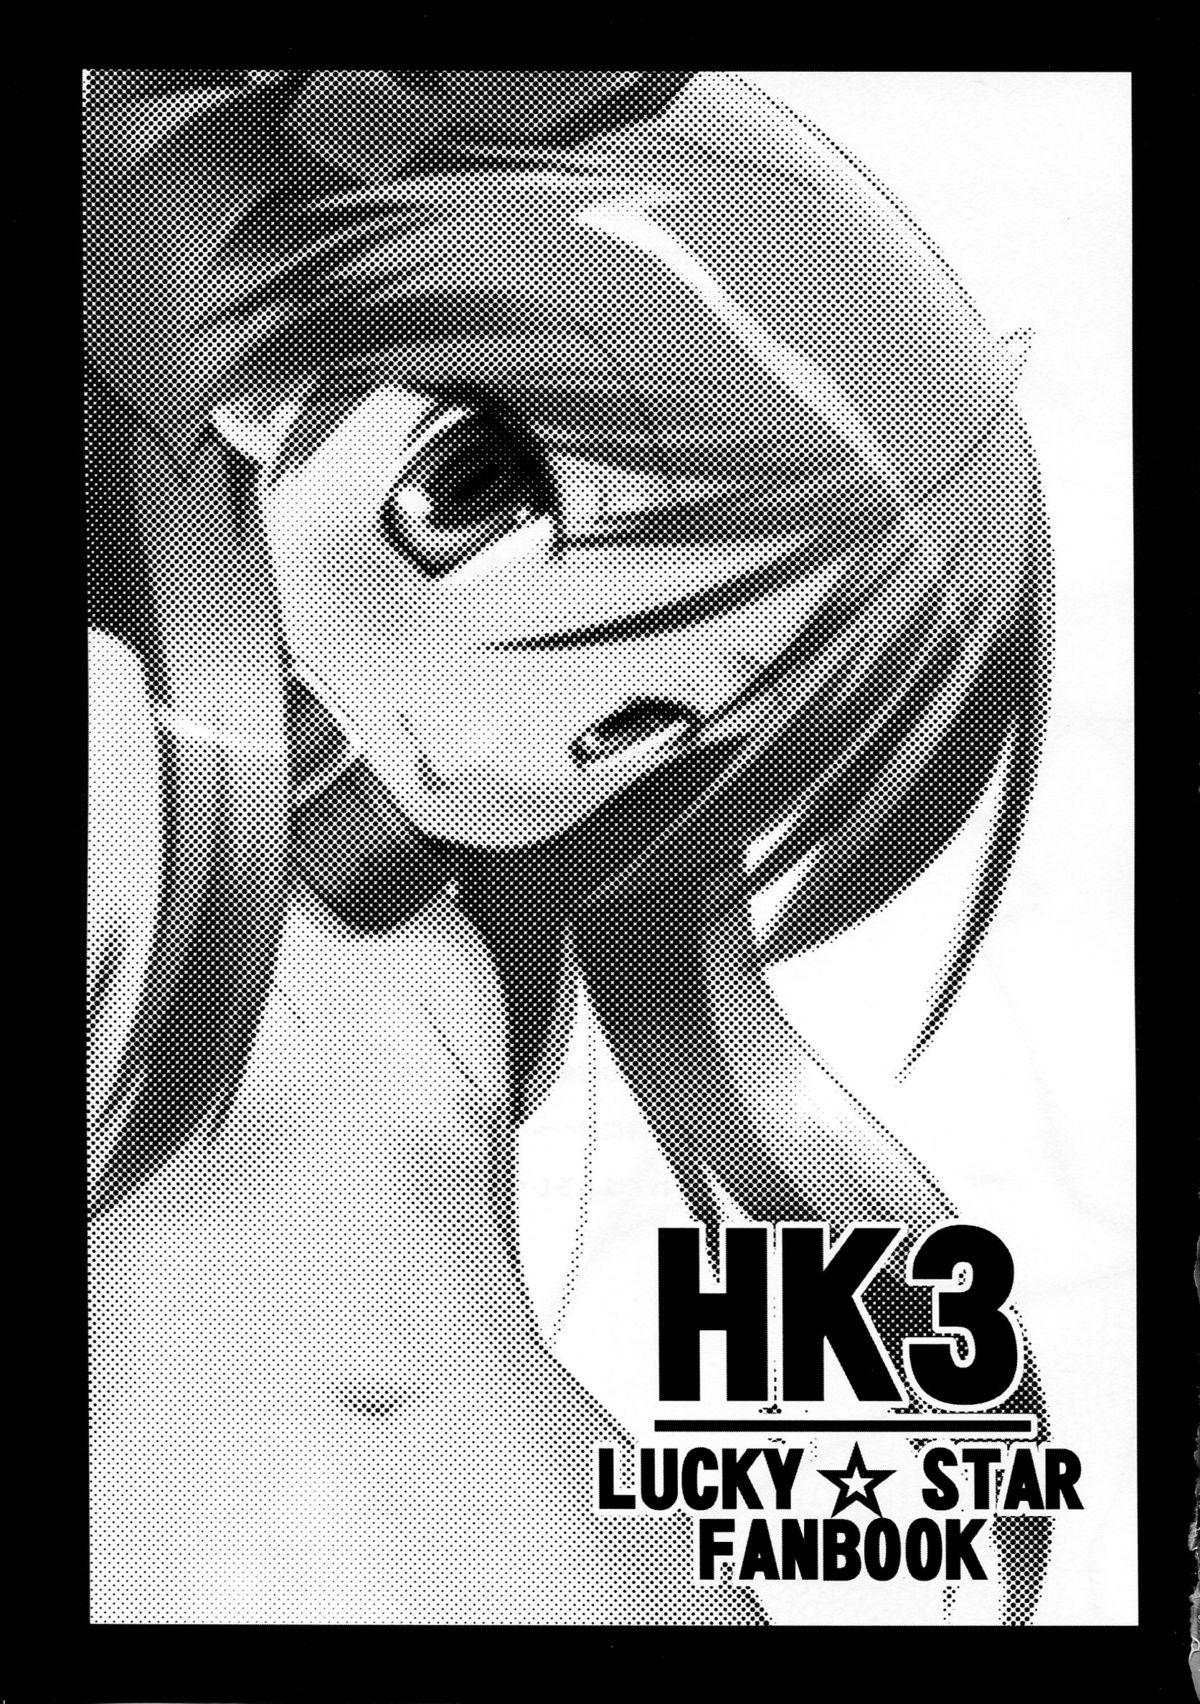 HK3 2